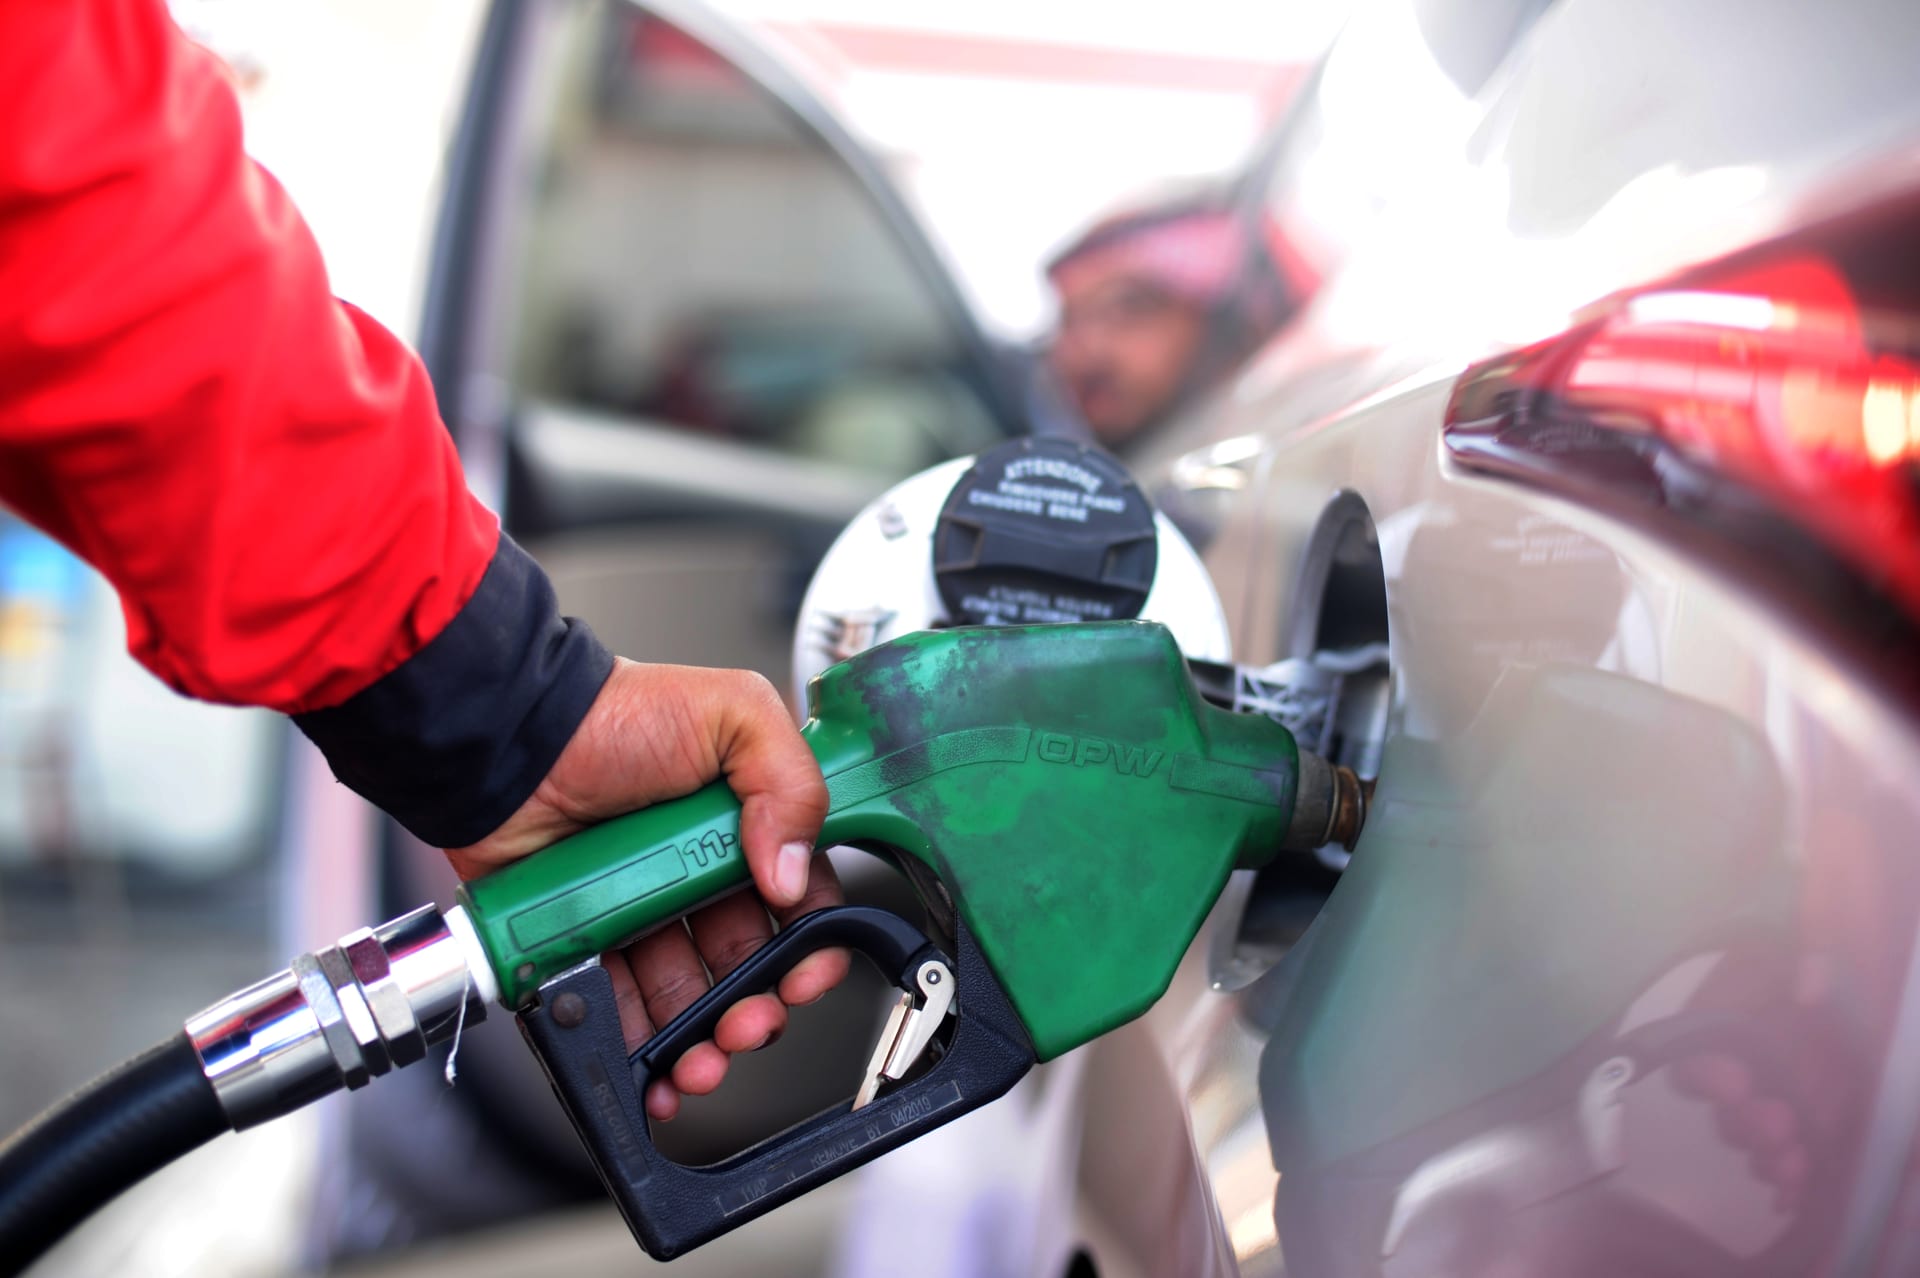 اسعار البنزين فى السعودية لشهر مايو 2021 بعد مراجعة ارامكو الجديدة على تسعيرة بنزين 91 وبنزين 95